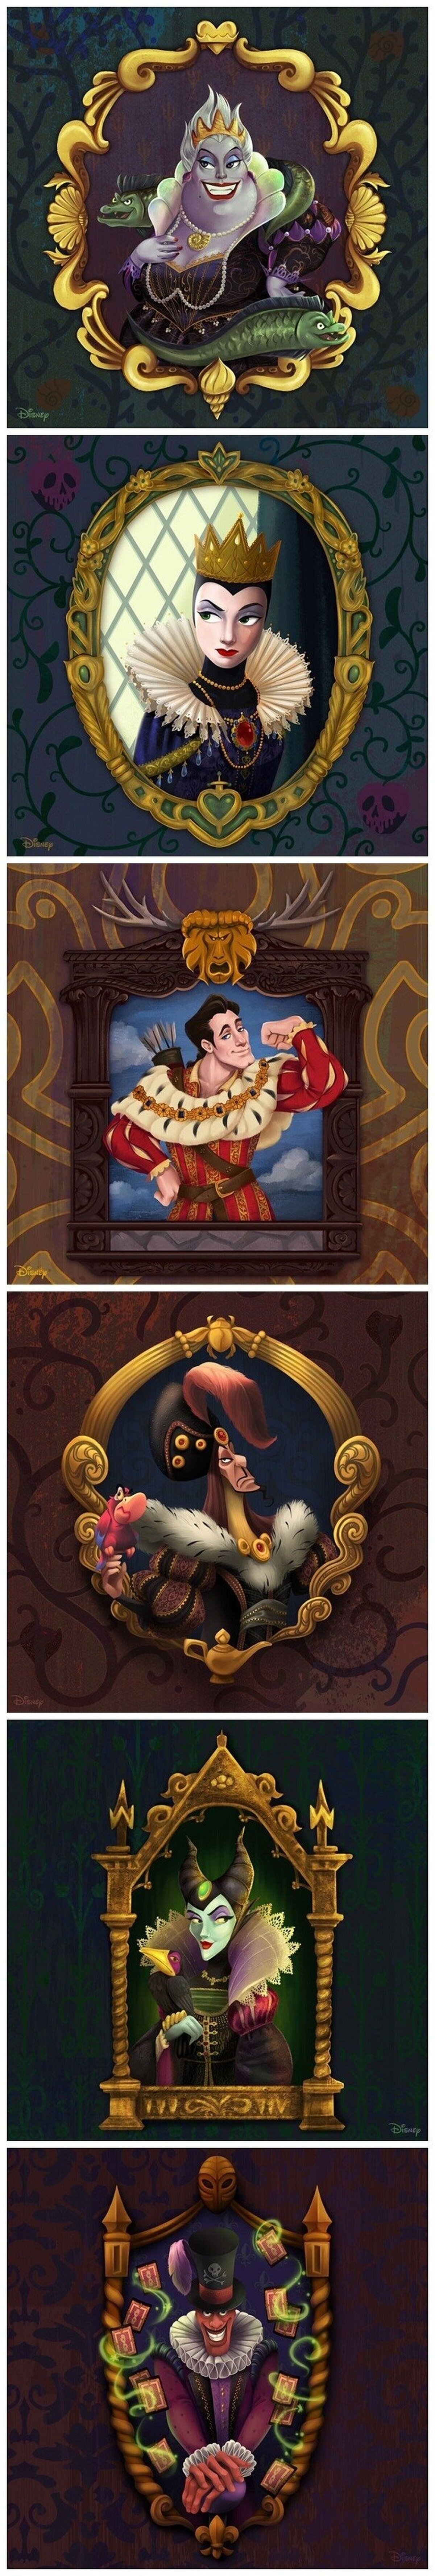 Estos son los villanos Disney en versión renacentista, ¡muy artísticos!